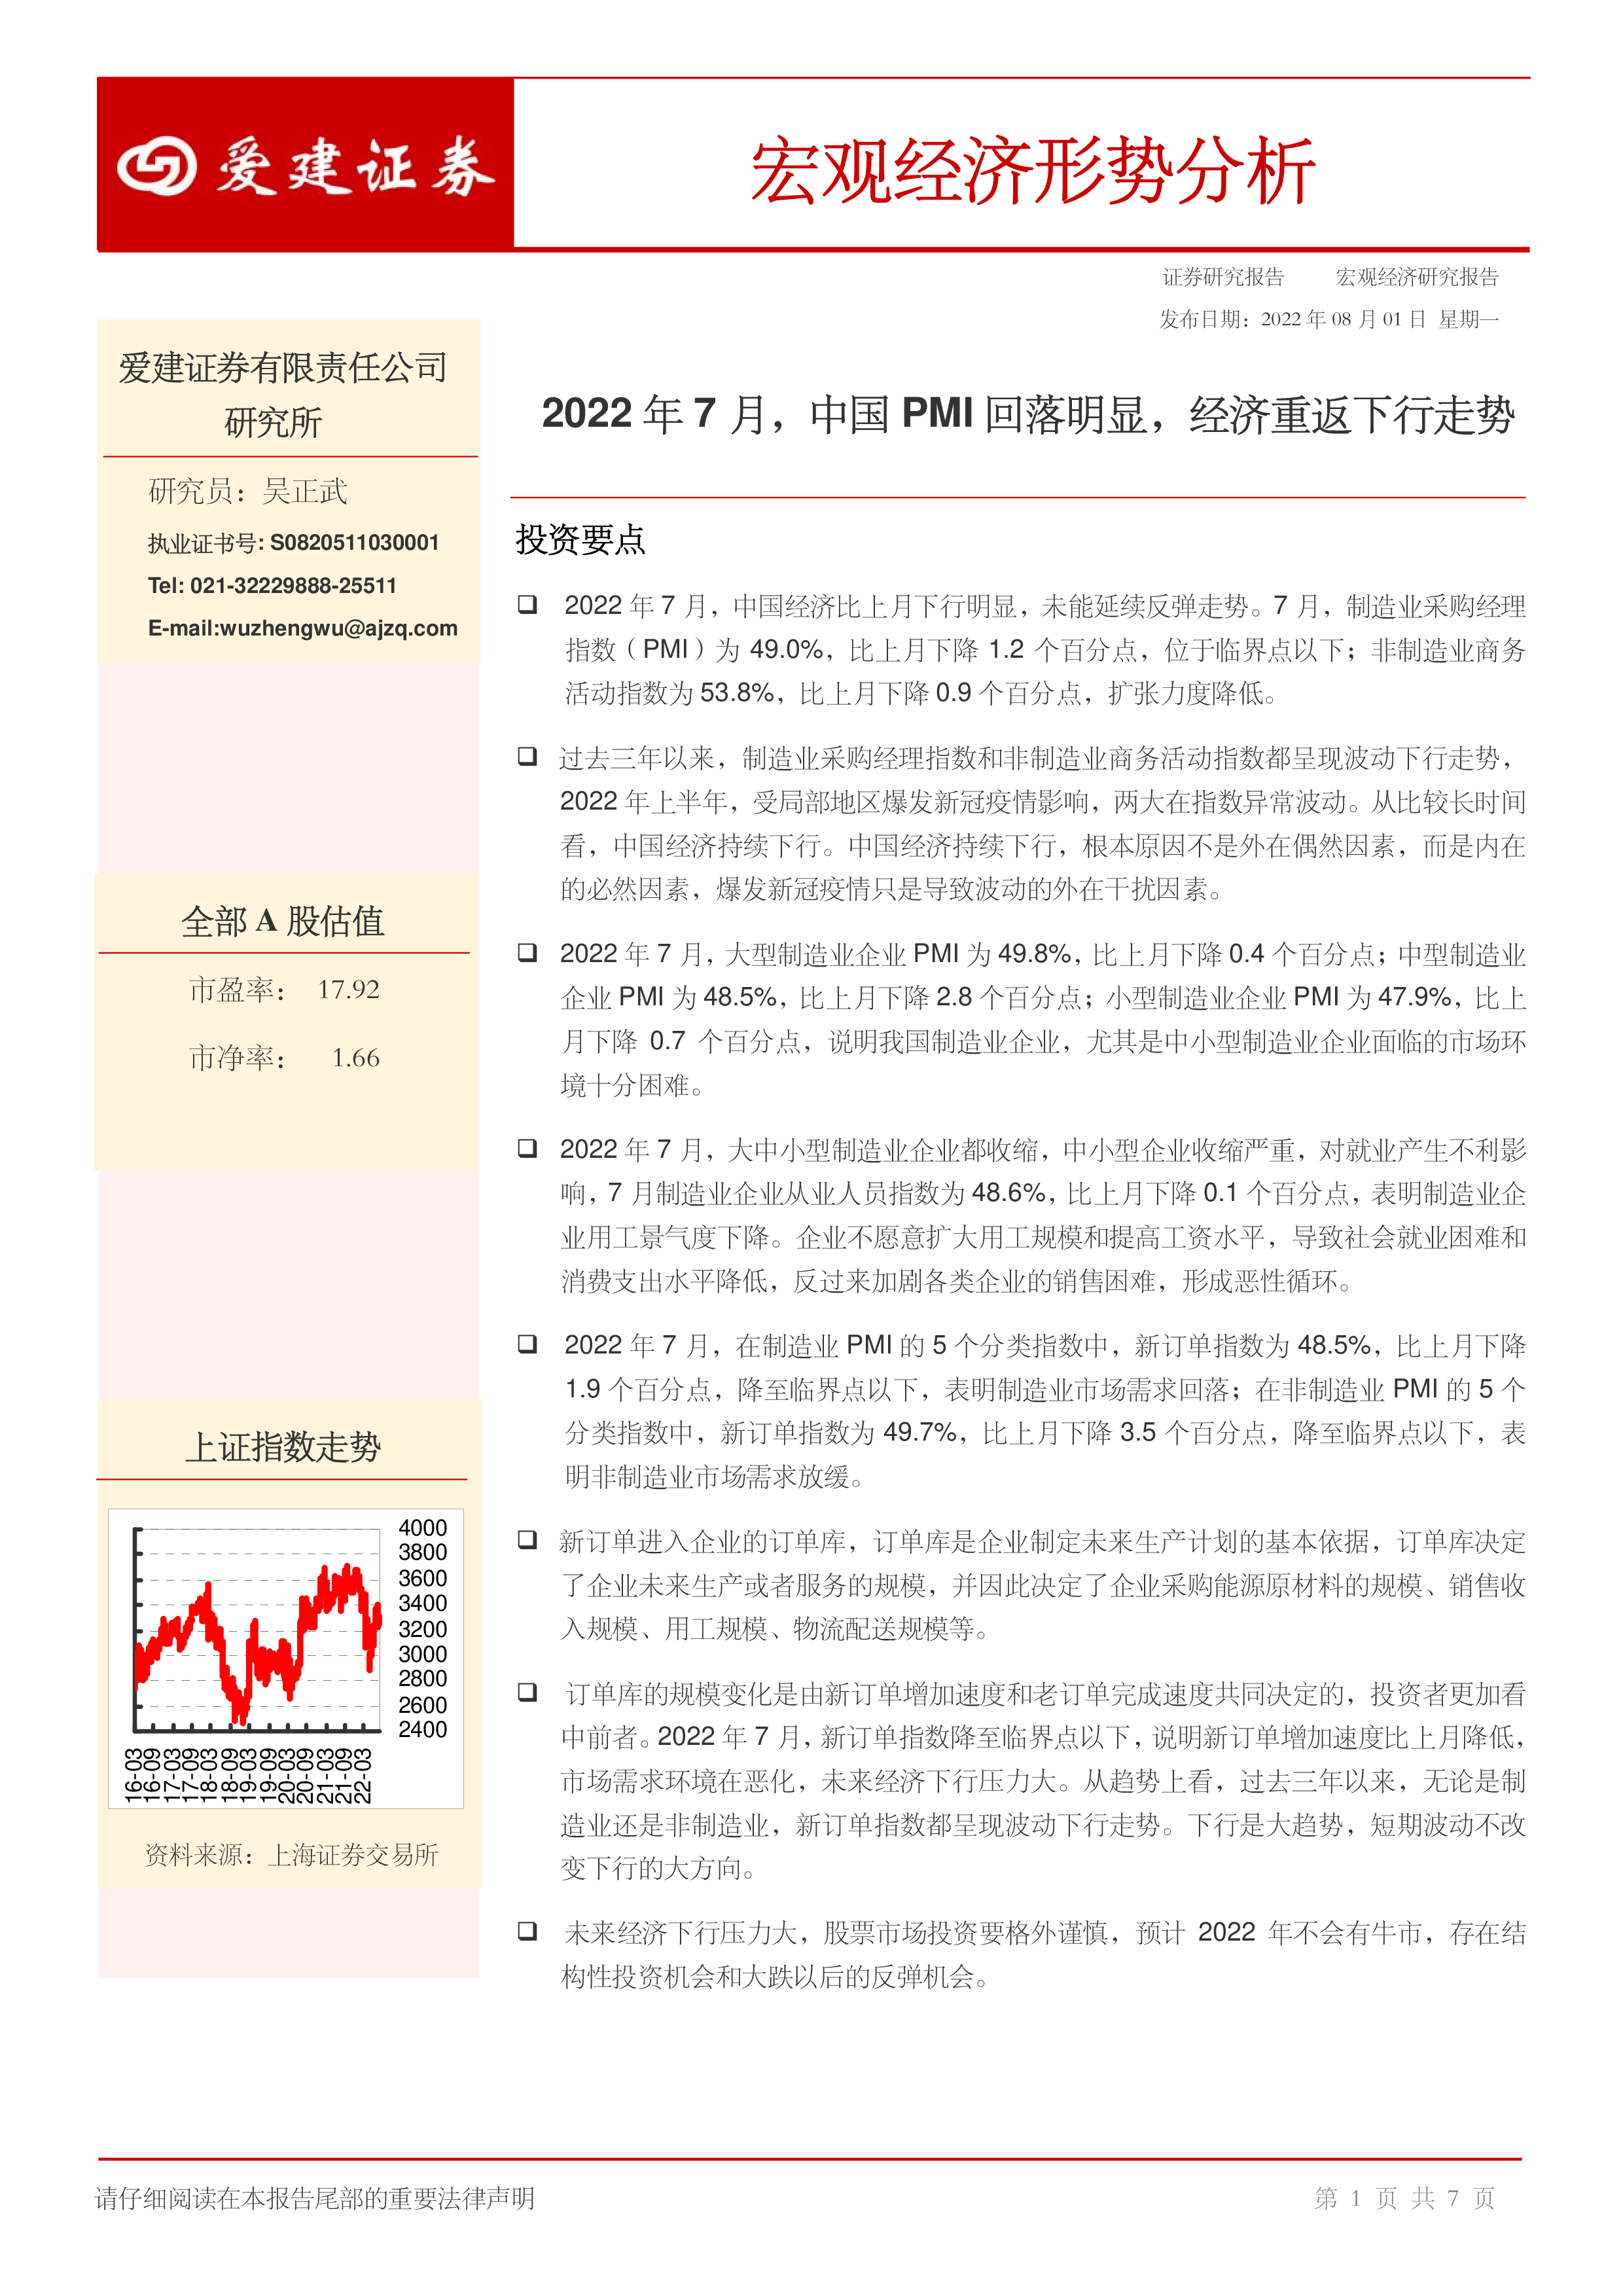 2023年四川经济形势分析与预测（一）_报告-报告厅